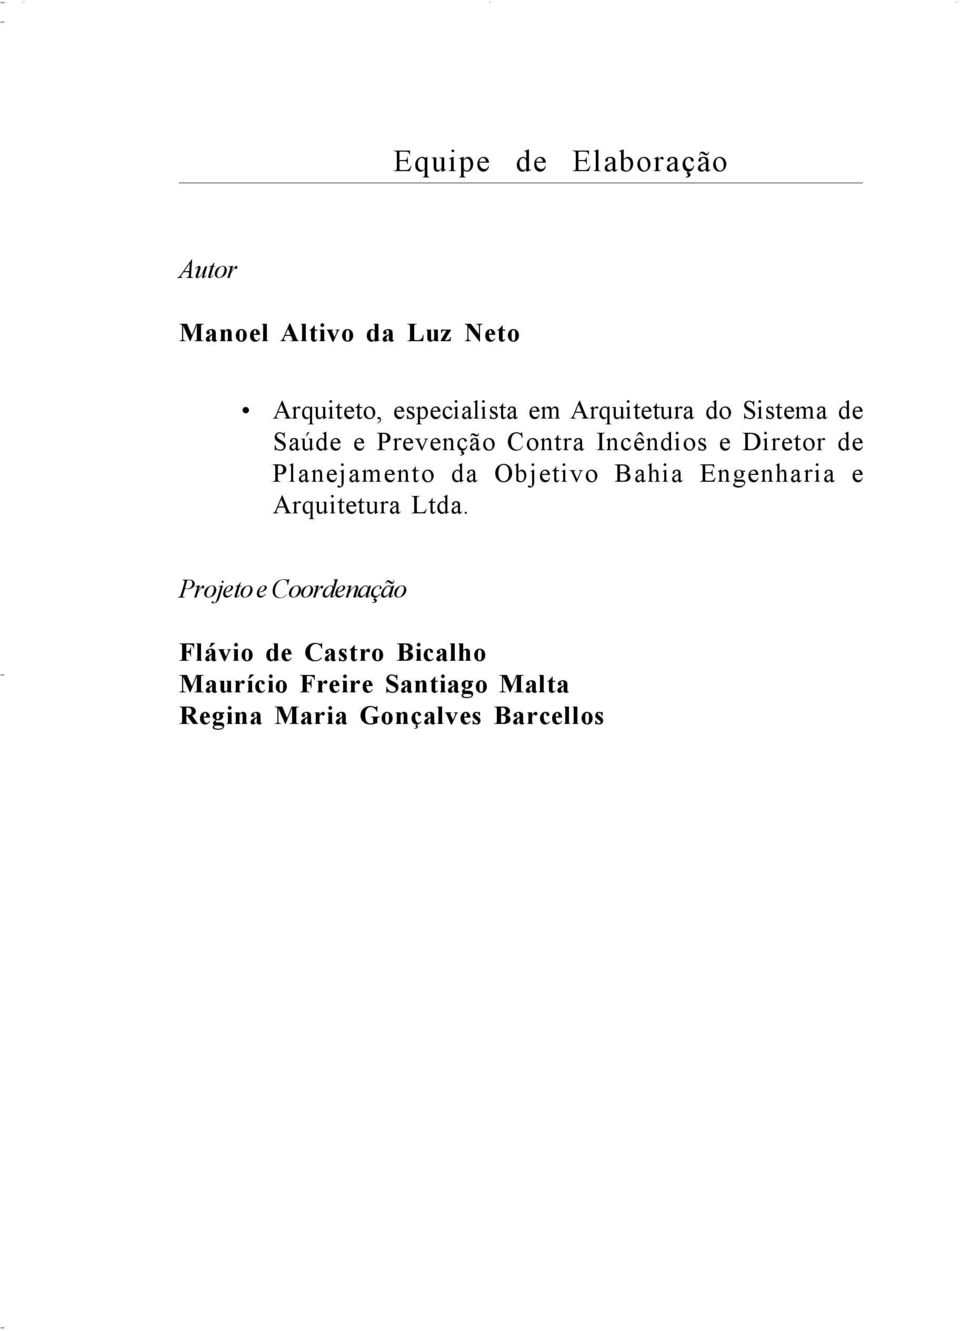 Planejamento da Objetivo Bahia Engenharia e Arquitetura Ltda.